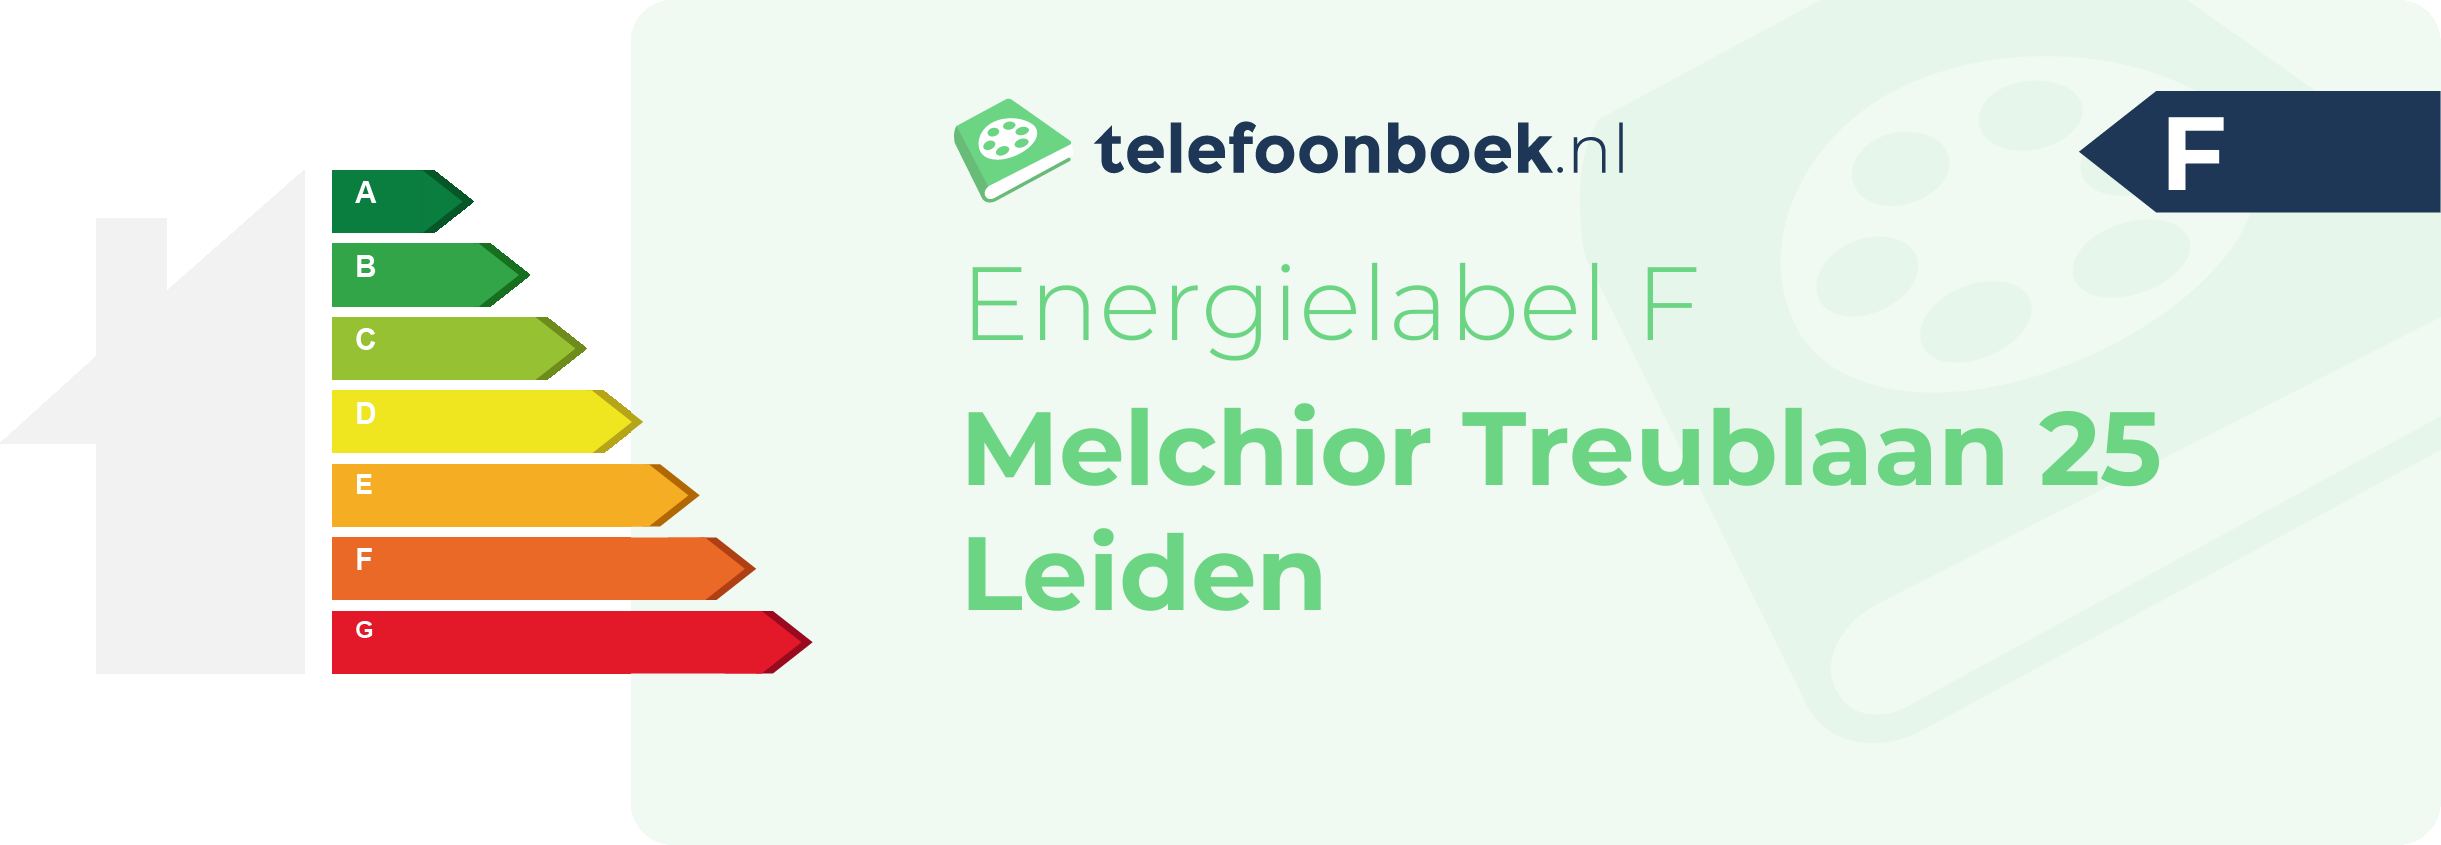 Energielabel Melchior Treublaan 25 Leiden